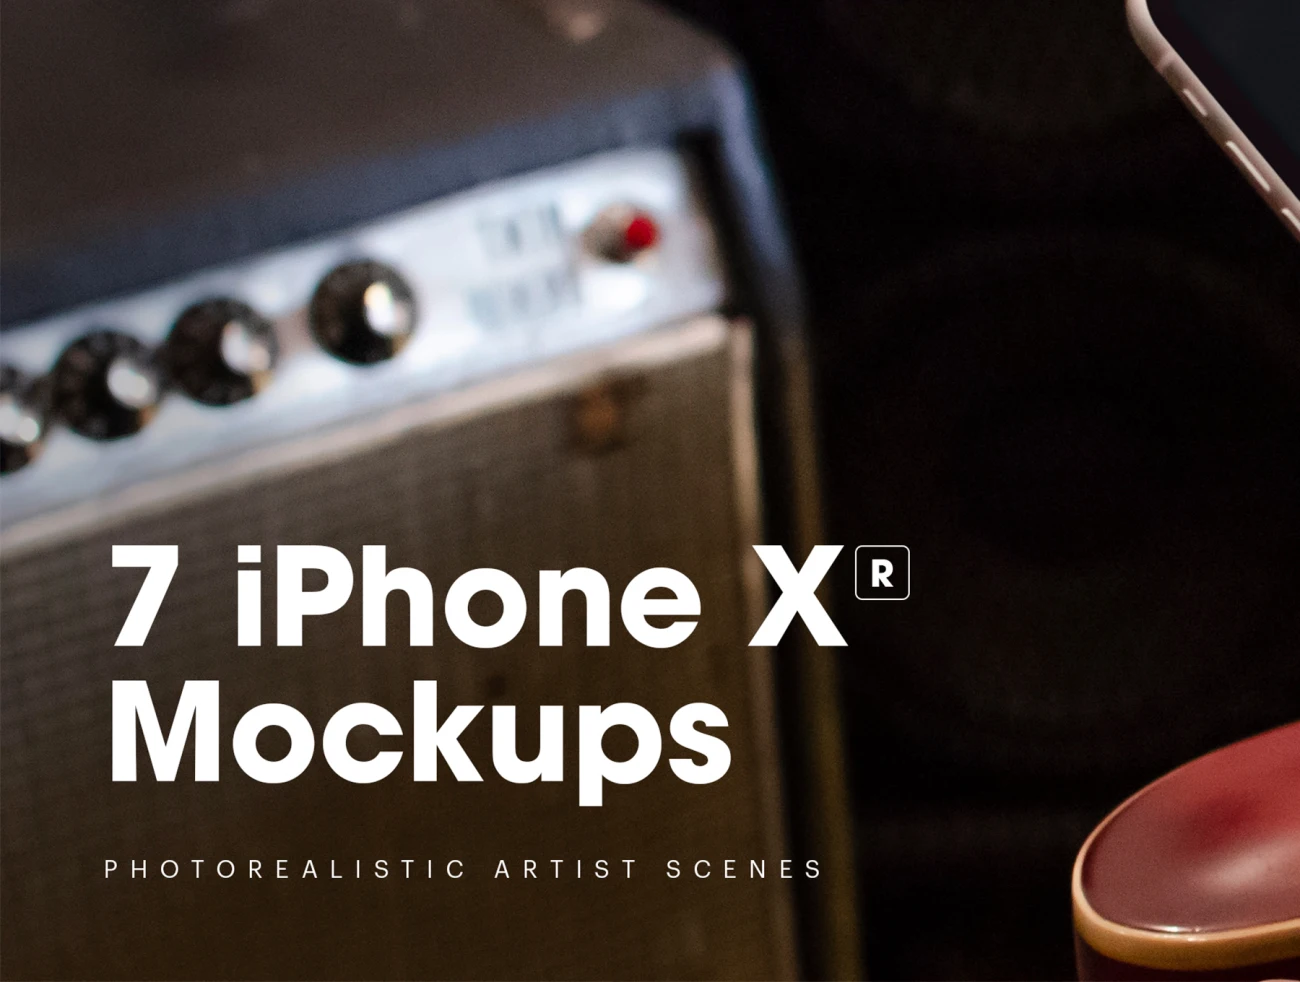 7 iPhone XR Mockups iPhone XR智能样机展示-产品展示、优雅样机、创意展示、实景样机、手机模型、样机、苹果设备-到位啦UI